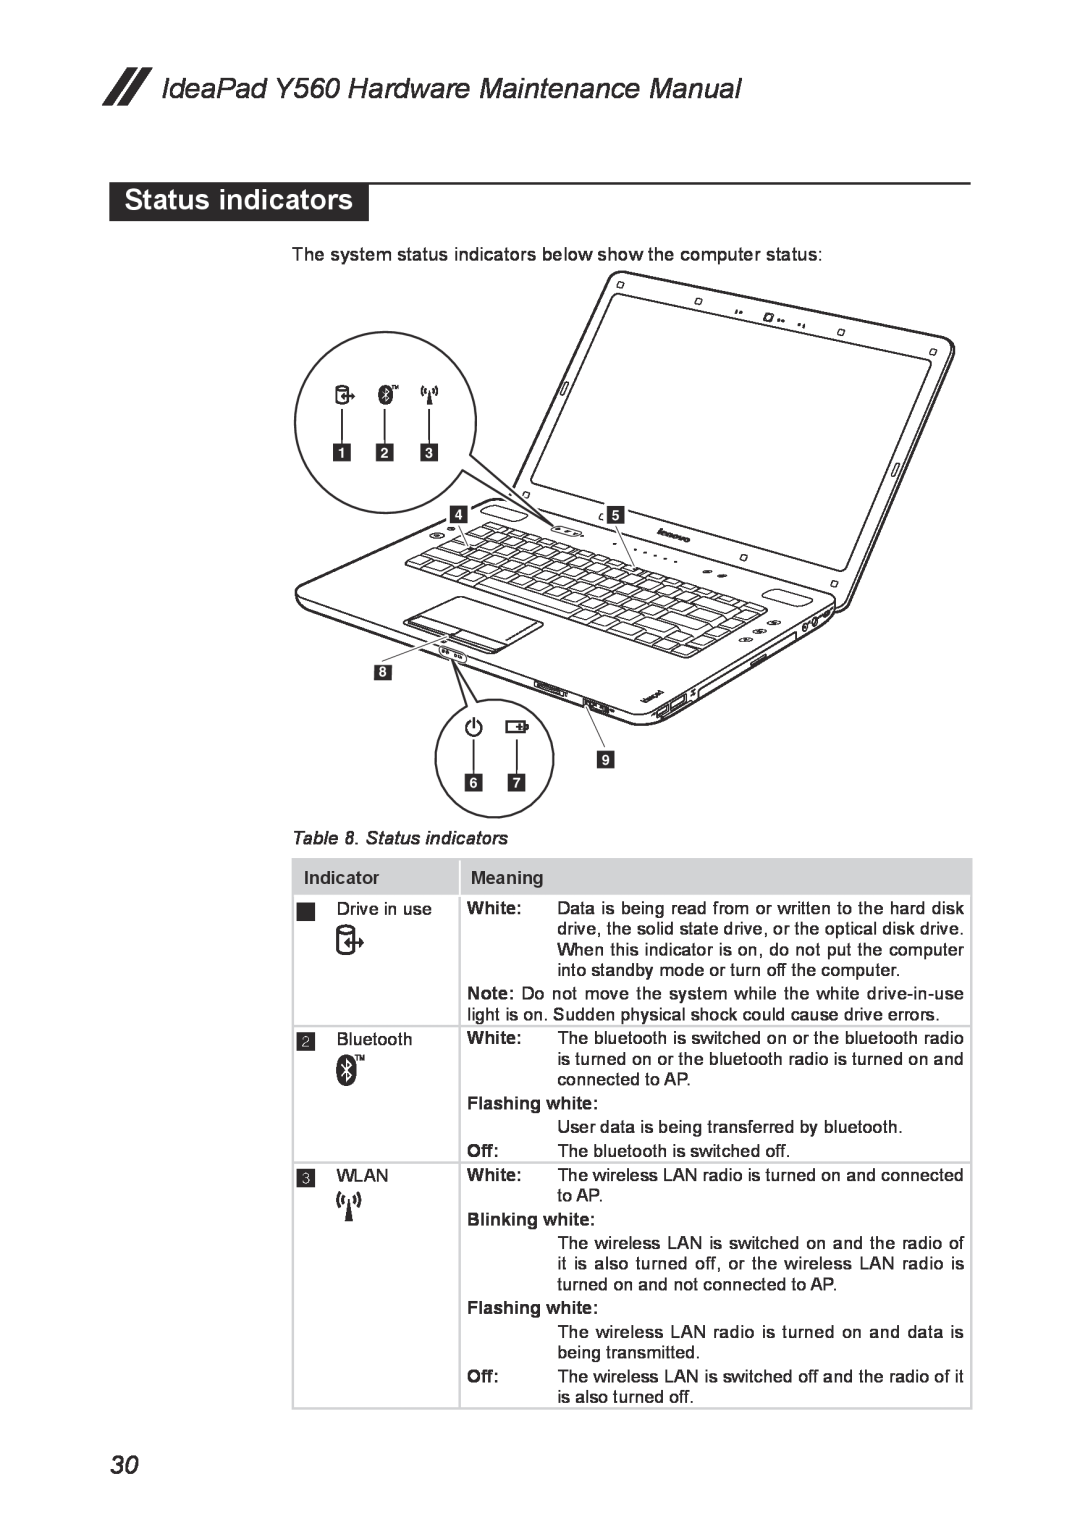 Lenovo manual Status indicators, IdeaPad Y560 Hardware Maintenance Manual, Indicator, Meaning, White, Flashing white 